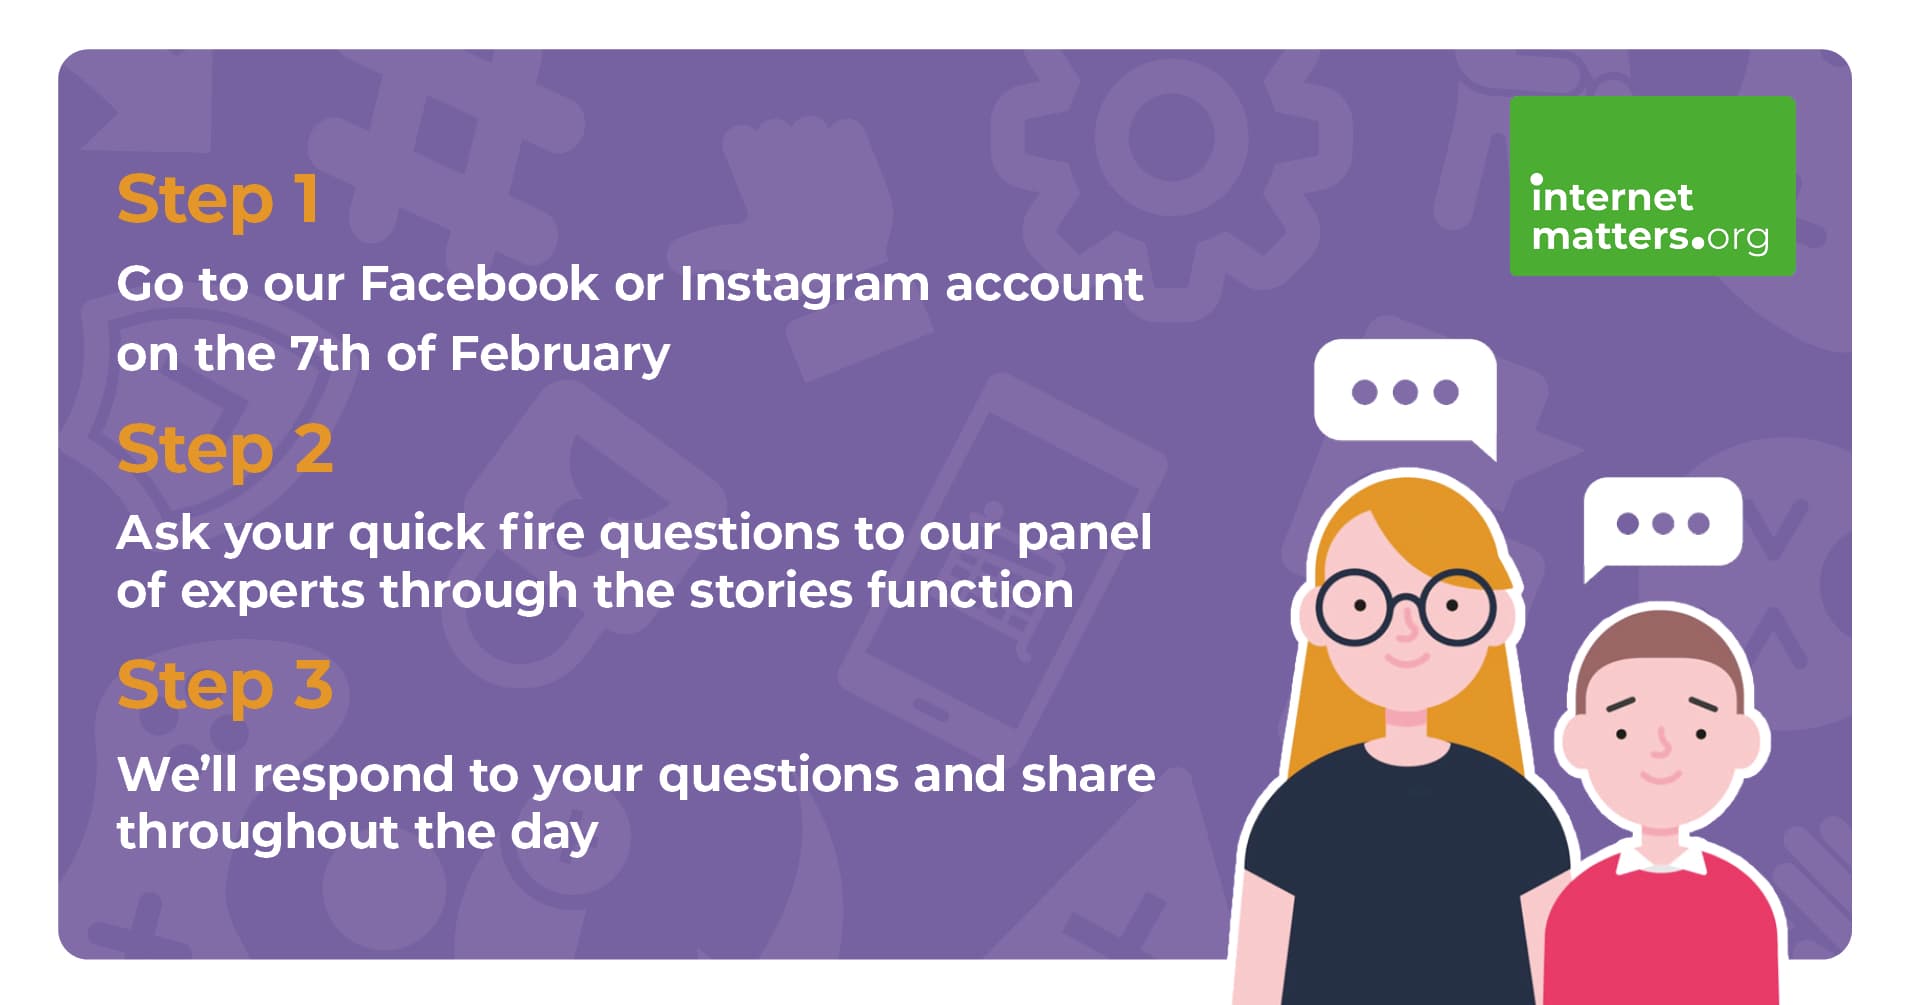 Инструктивное изображение, которое гласит: «Шаг 1. Зайдите на нашу учетную запись Facebook или Instagram 7 февраля. Шаг 2. Задайте свои быстрые вопросы нашей группе экспертов через функцию историй. Шаг 3. Мы ответим на ваши вопросы. и делиться в течение дня».